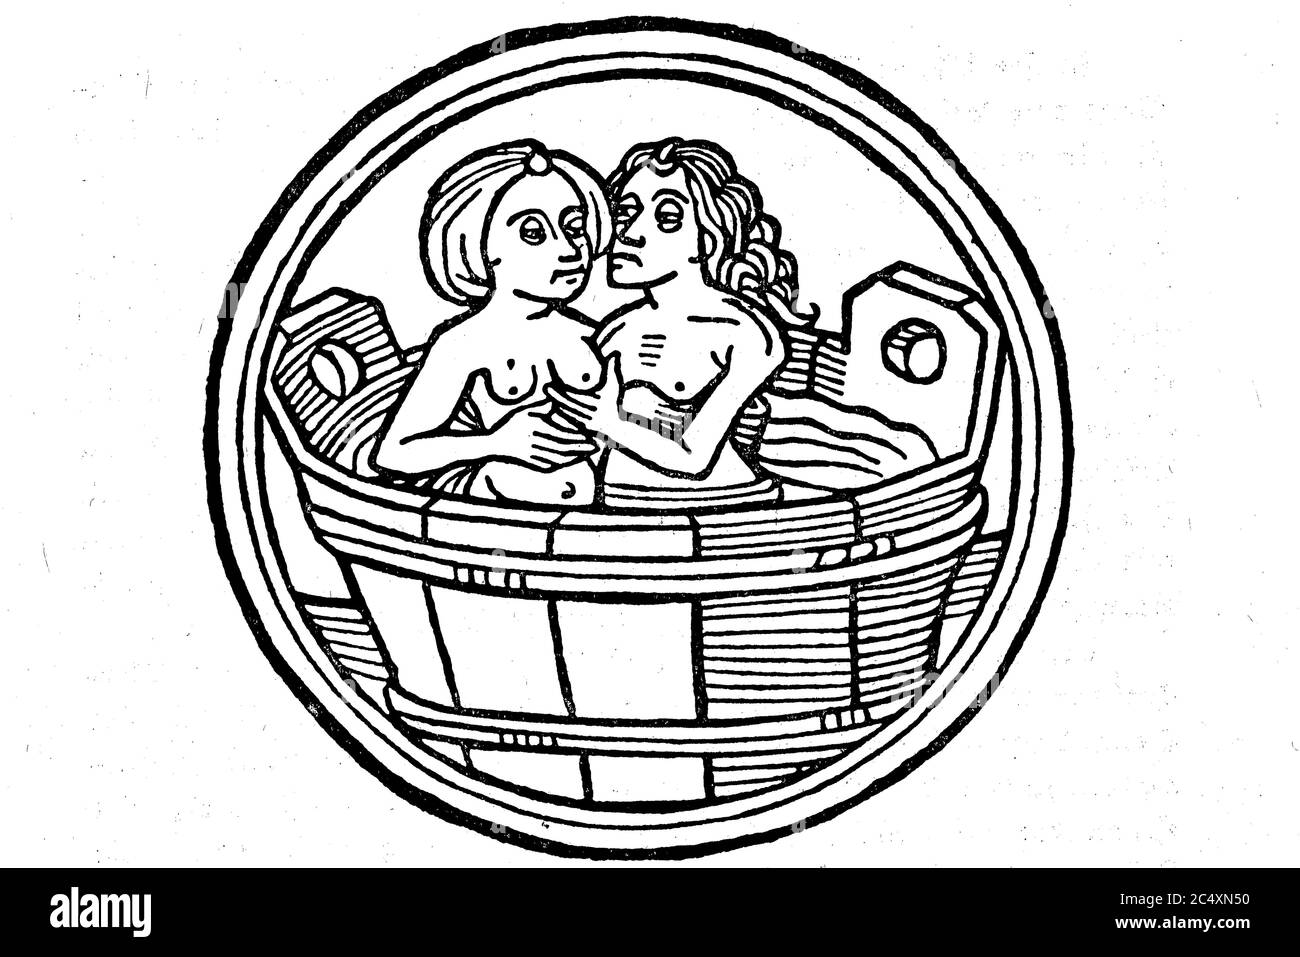 Man with woman in a bath, from the German calendar, 1480  /  Mann mit Frau in einer Badewanne, Aus dem deutschen Kalender, 1480 Stock Photo